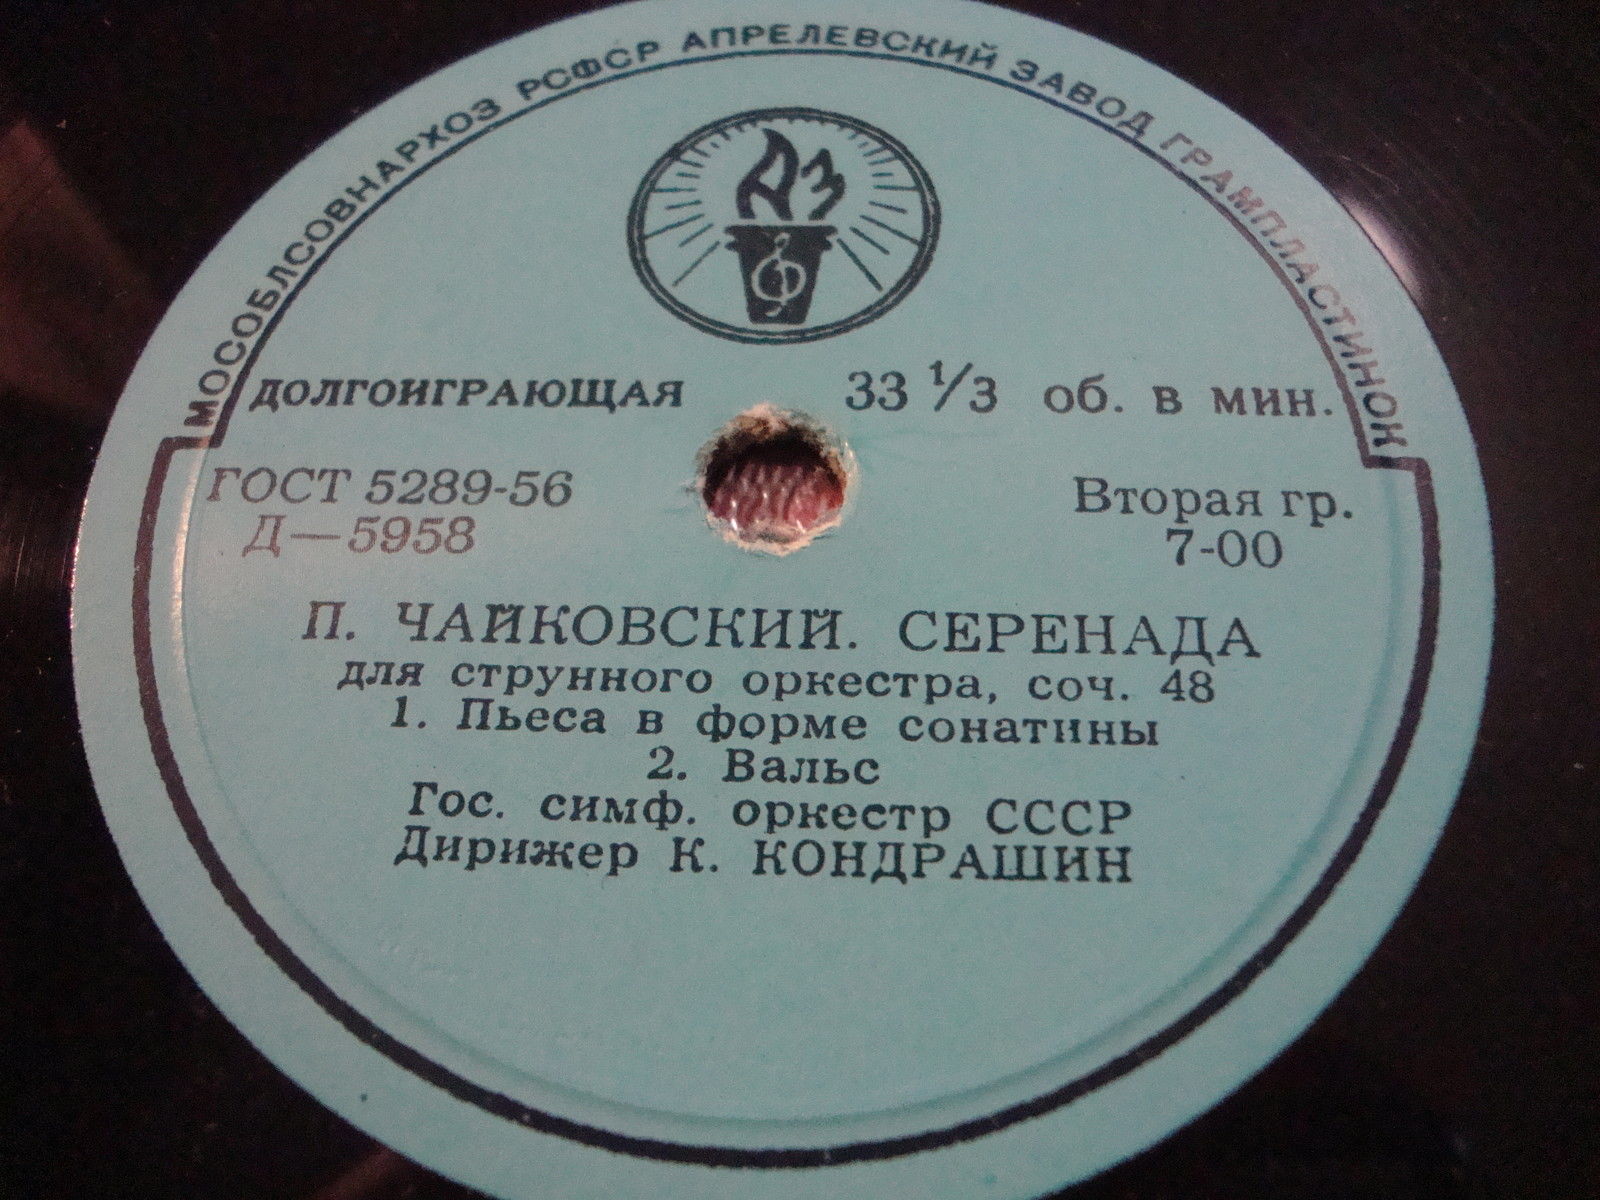 П. ЧАЙКОВСКИЙ Серенада для струнного оркестра (ГСО СССР, К. Кондрашин)